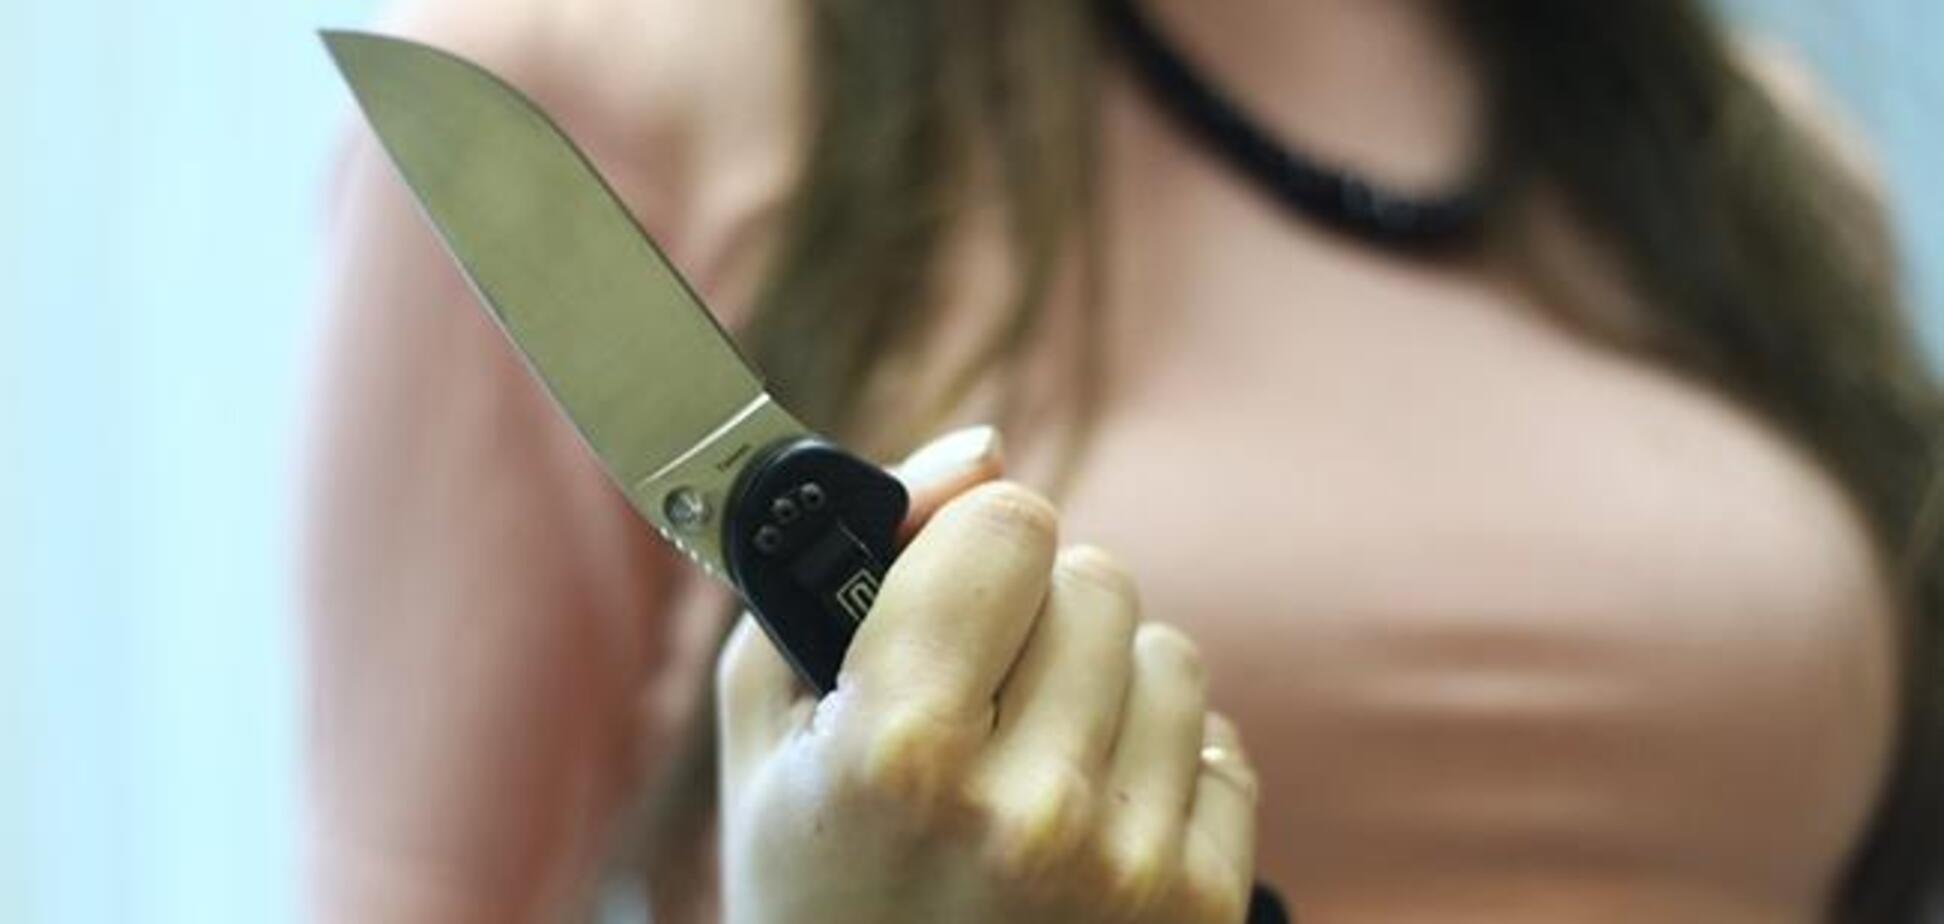 Пошматувала ножем: українка по-звірячому вбила новонароджену дитину